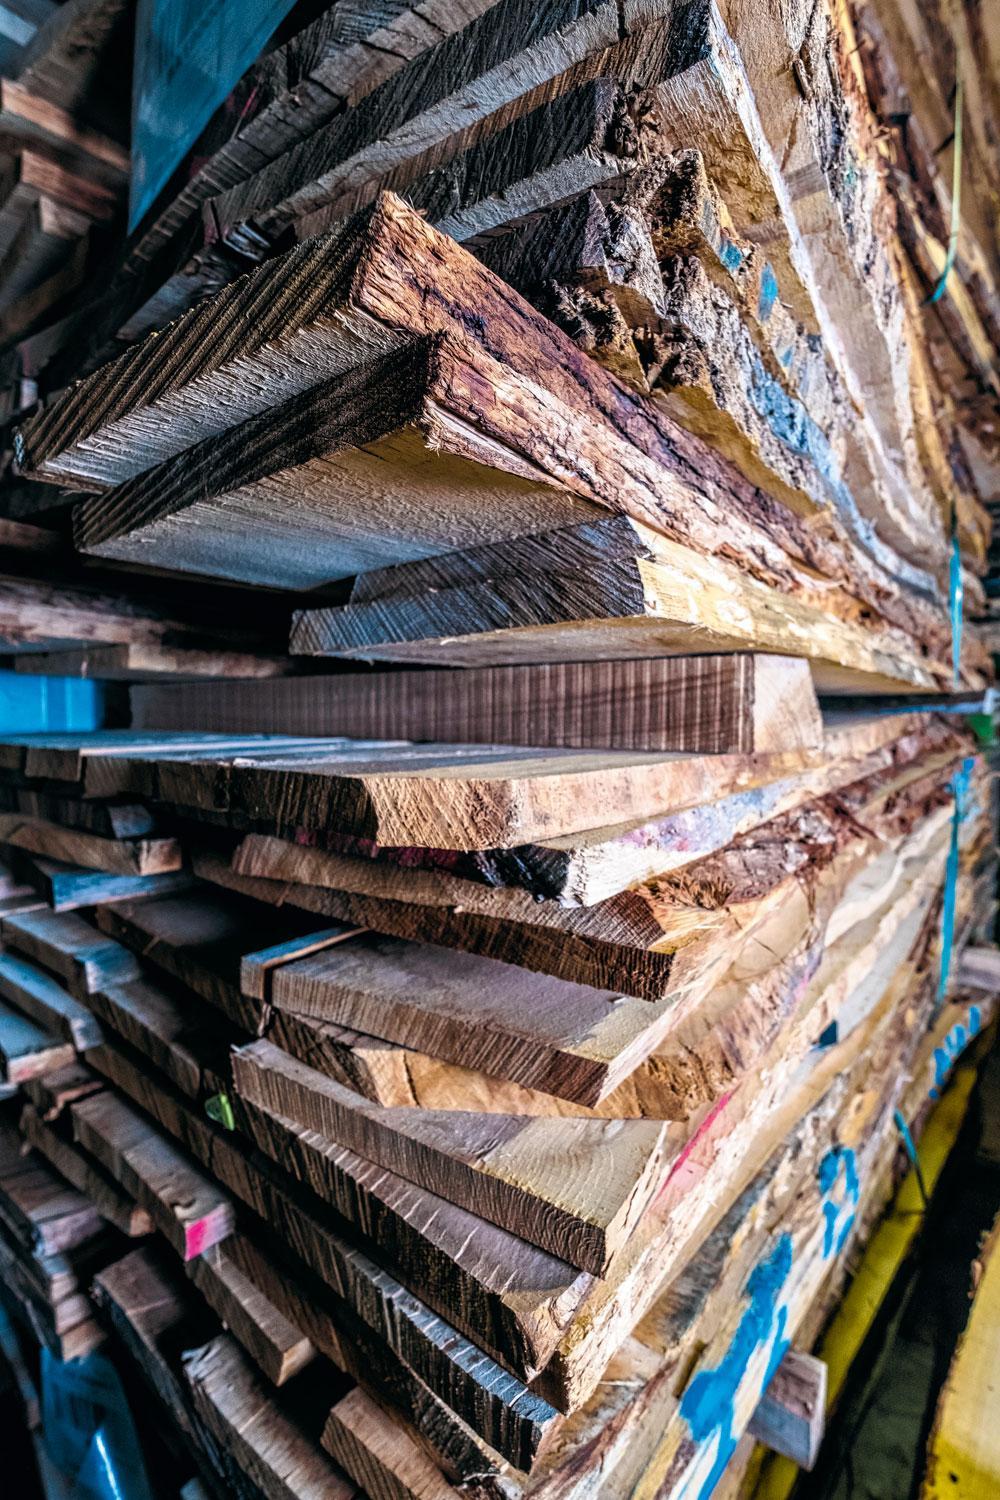 1 Kwalitatief hout - Vanuit de basisvoorraad in de Antwerpse haven wordt dagelijks ruw hout aangevoerd, voor 35.000 massieve kisten per jaar. Amerikaanse witte eik, Franse eik, tropisch hout, den en populier. Opvallend is de hoogstaande kwaliteit, zelfs kwalitatiever hout dan voor meubels.